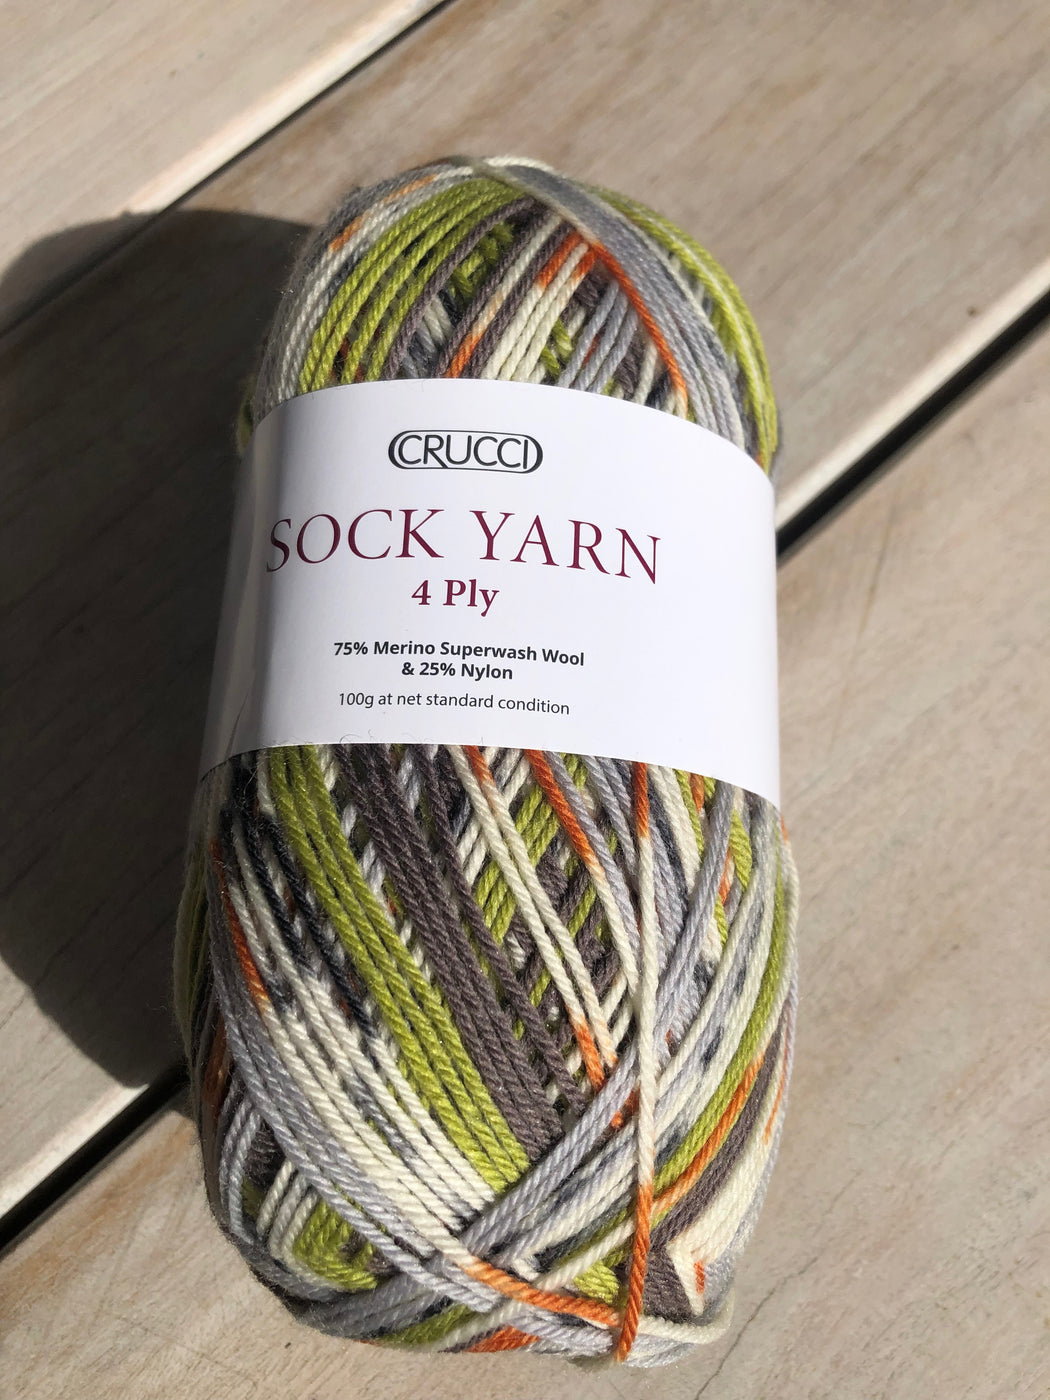 Crucci 4 ply Sock Yarn